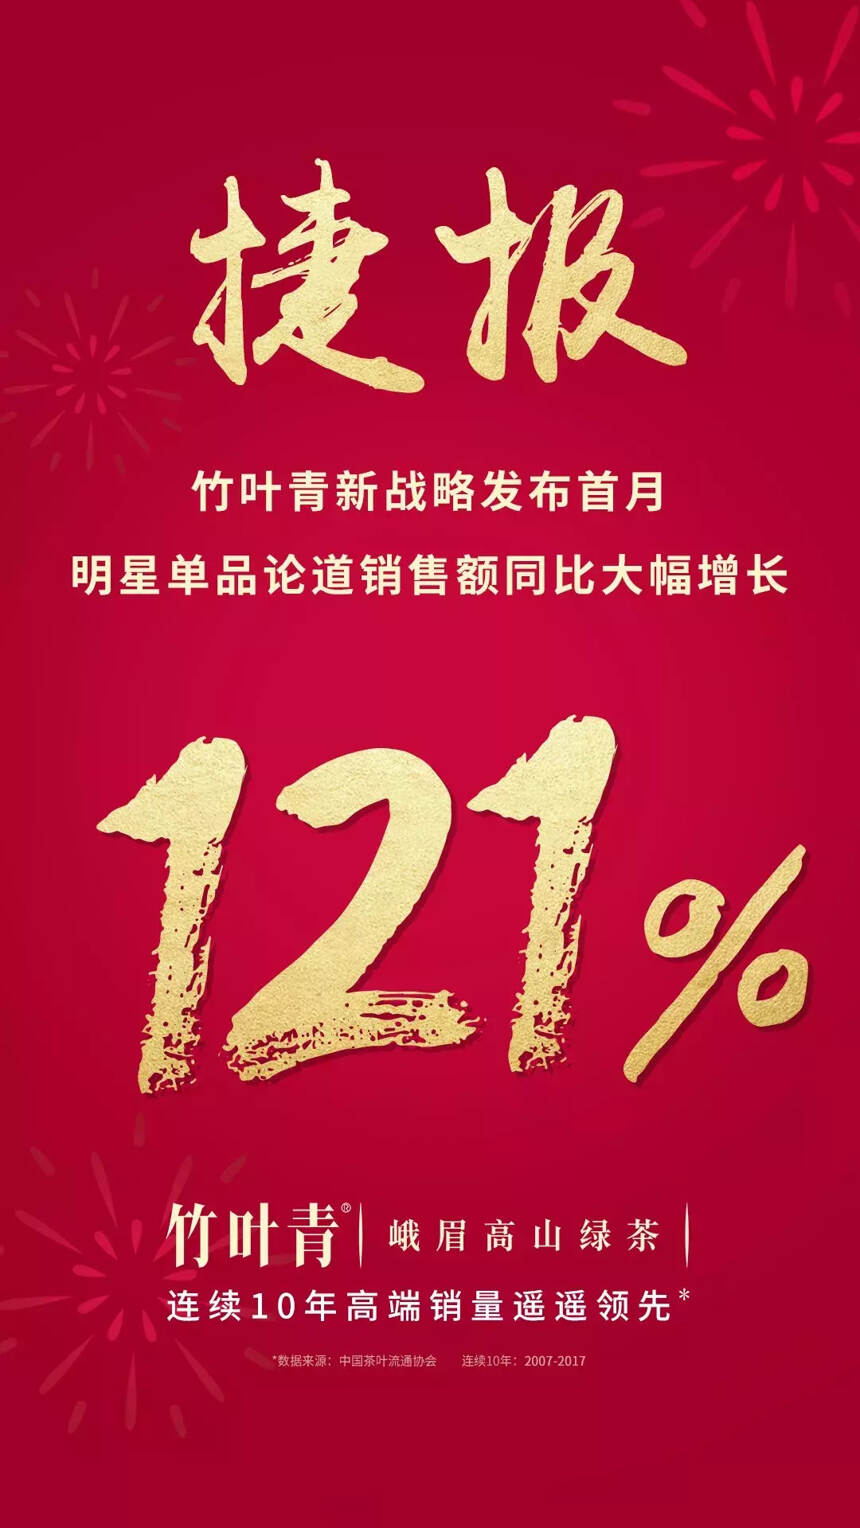 同比大增75%，竹叶青新战略发布首月赢得更多中国人的青睐